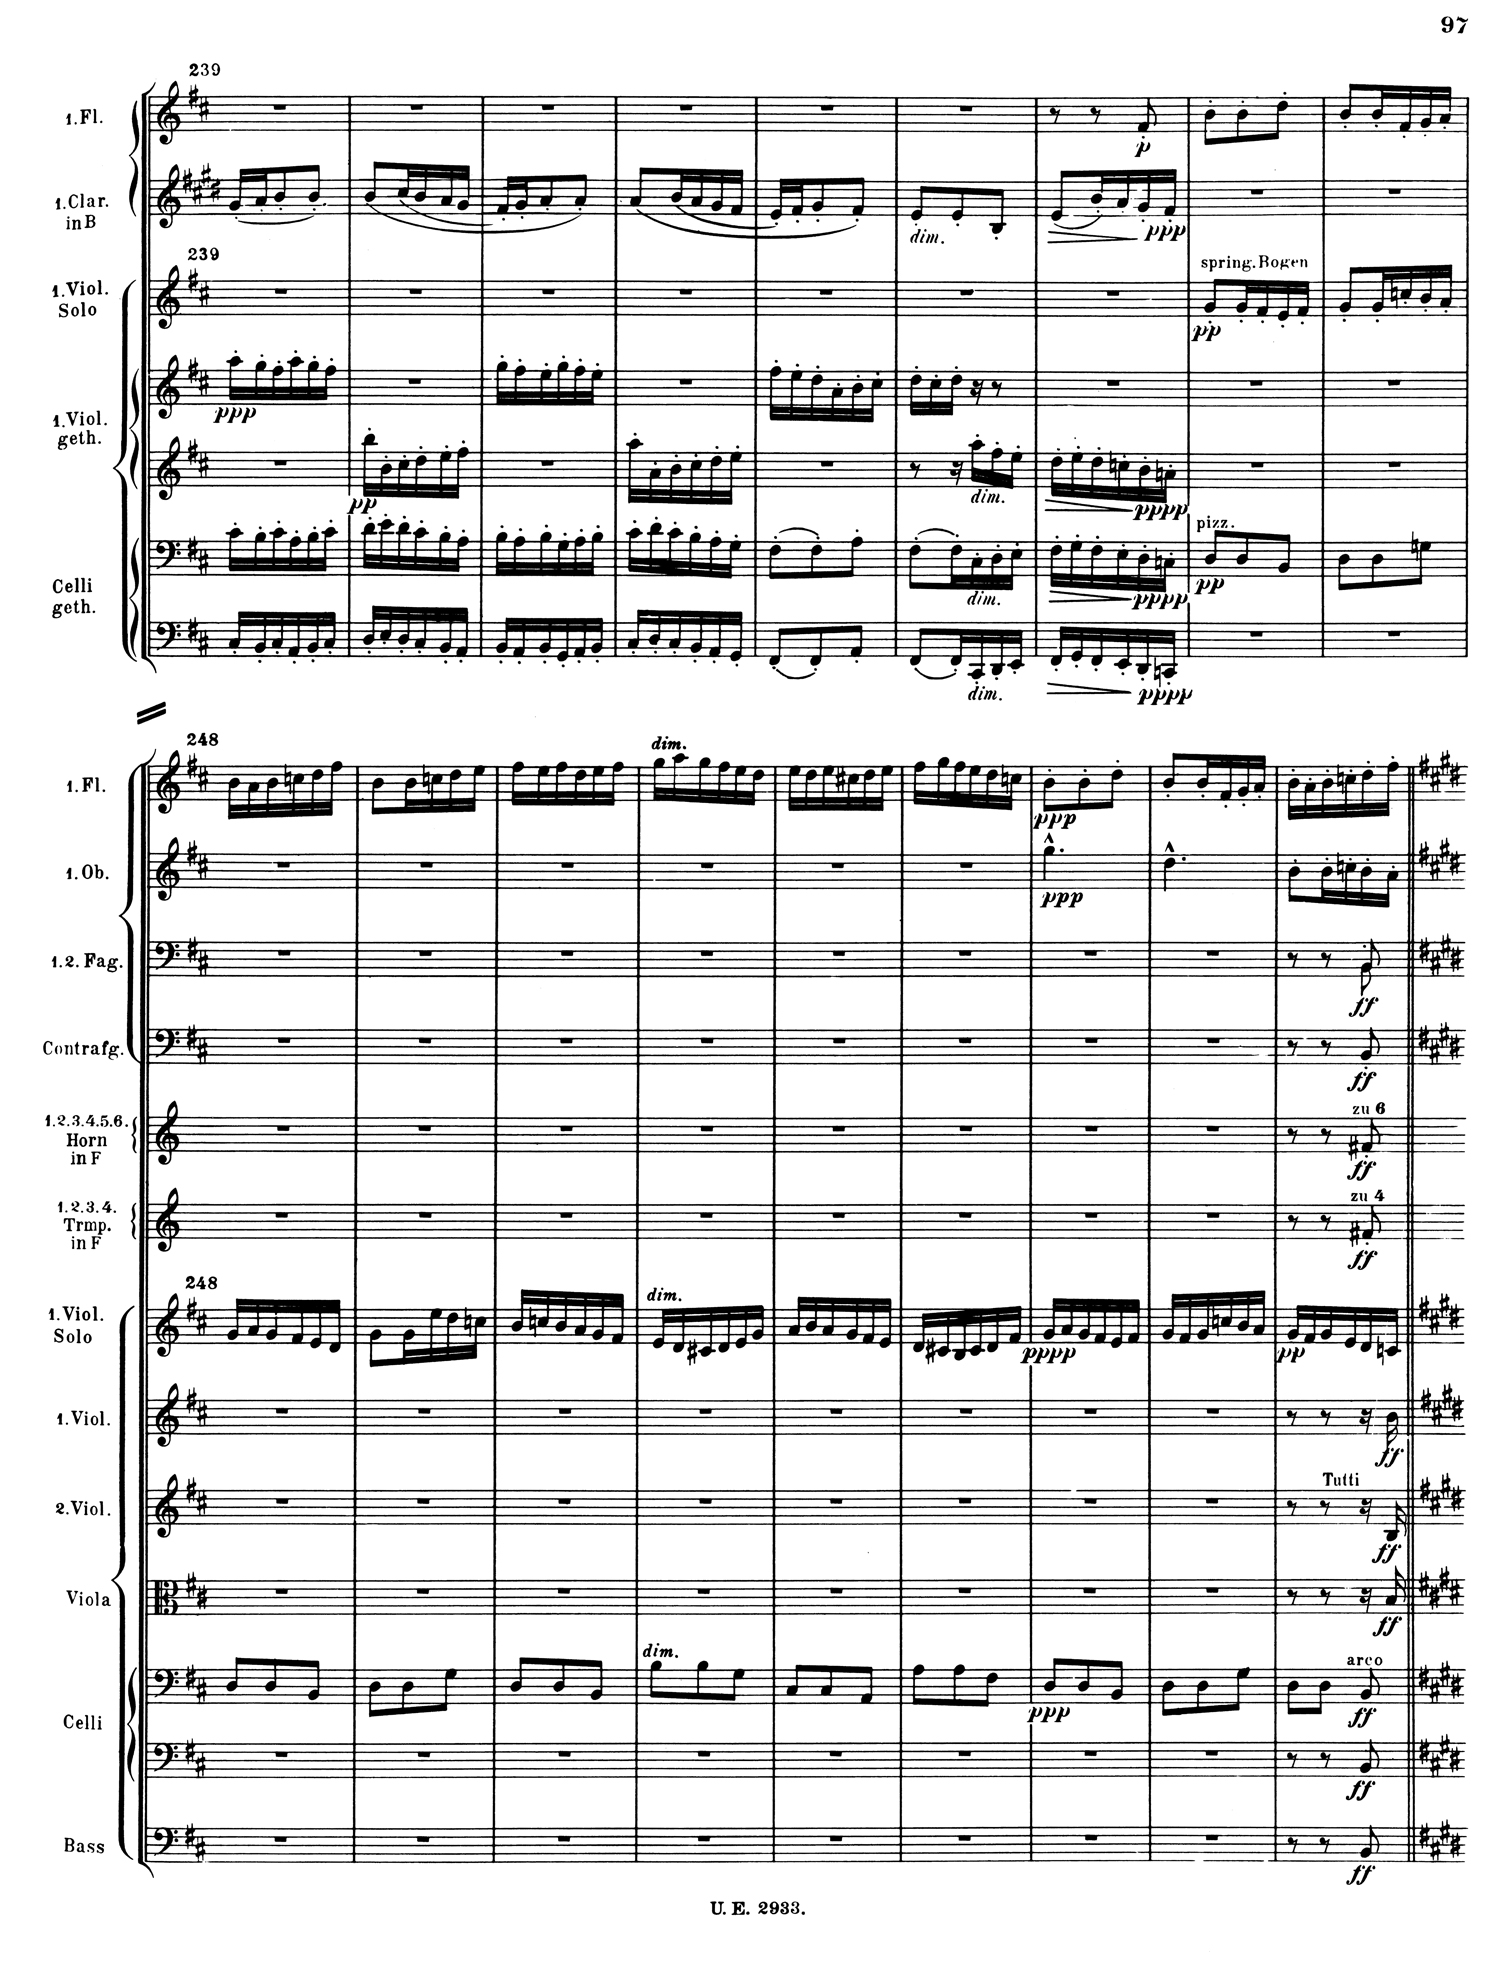 Mahler 2 Score 4.jpg